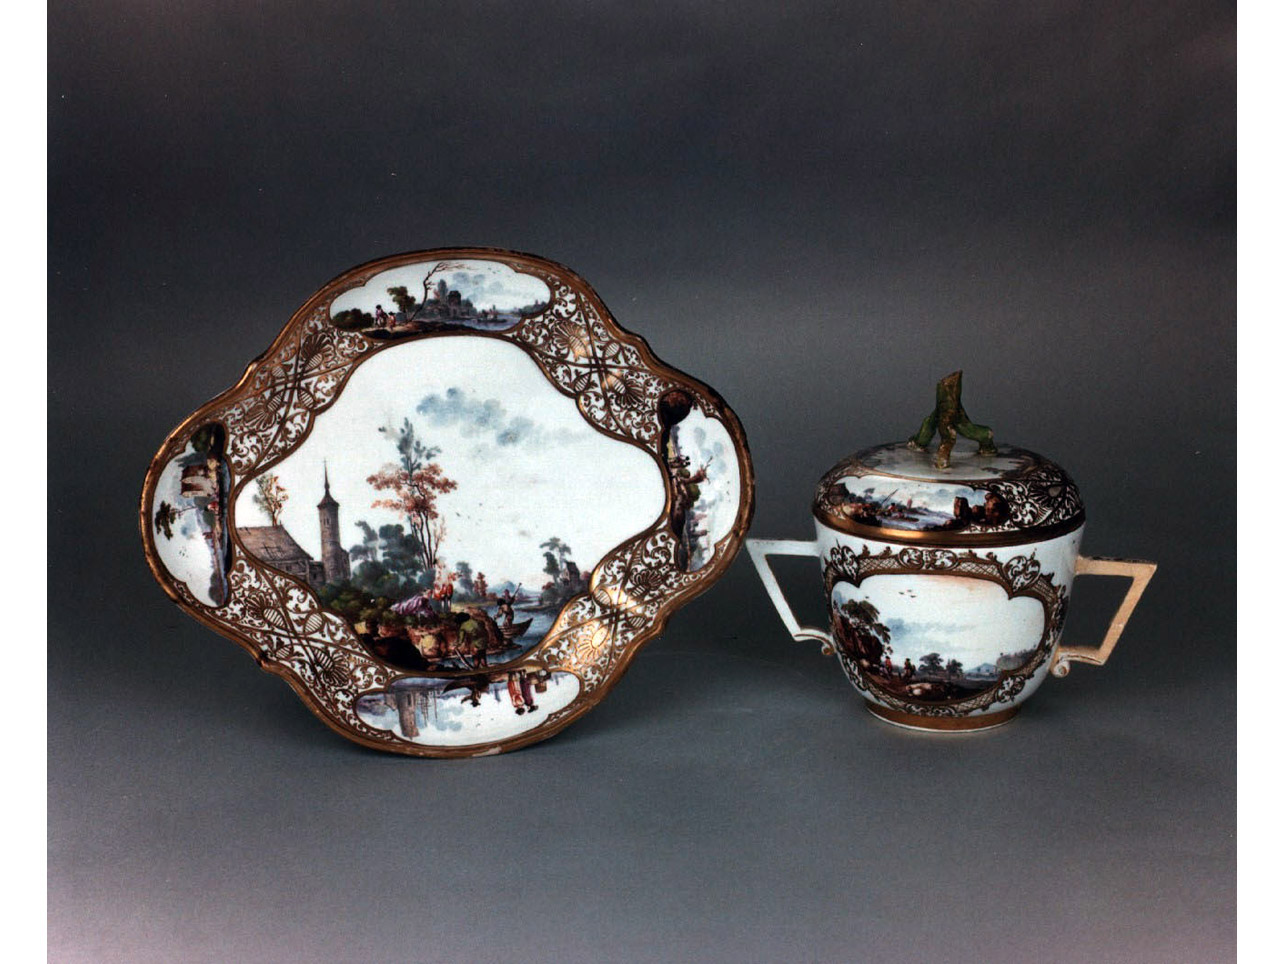 paesaggi fluviali con figure/ motivi decorativi vegetali (piatto) - manifattura di Meissen (sec. XVIII)